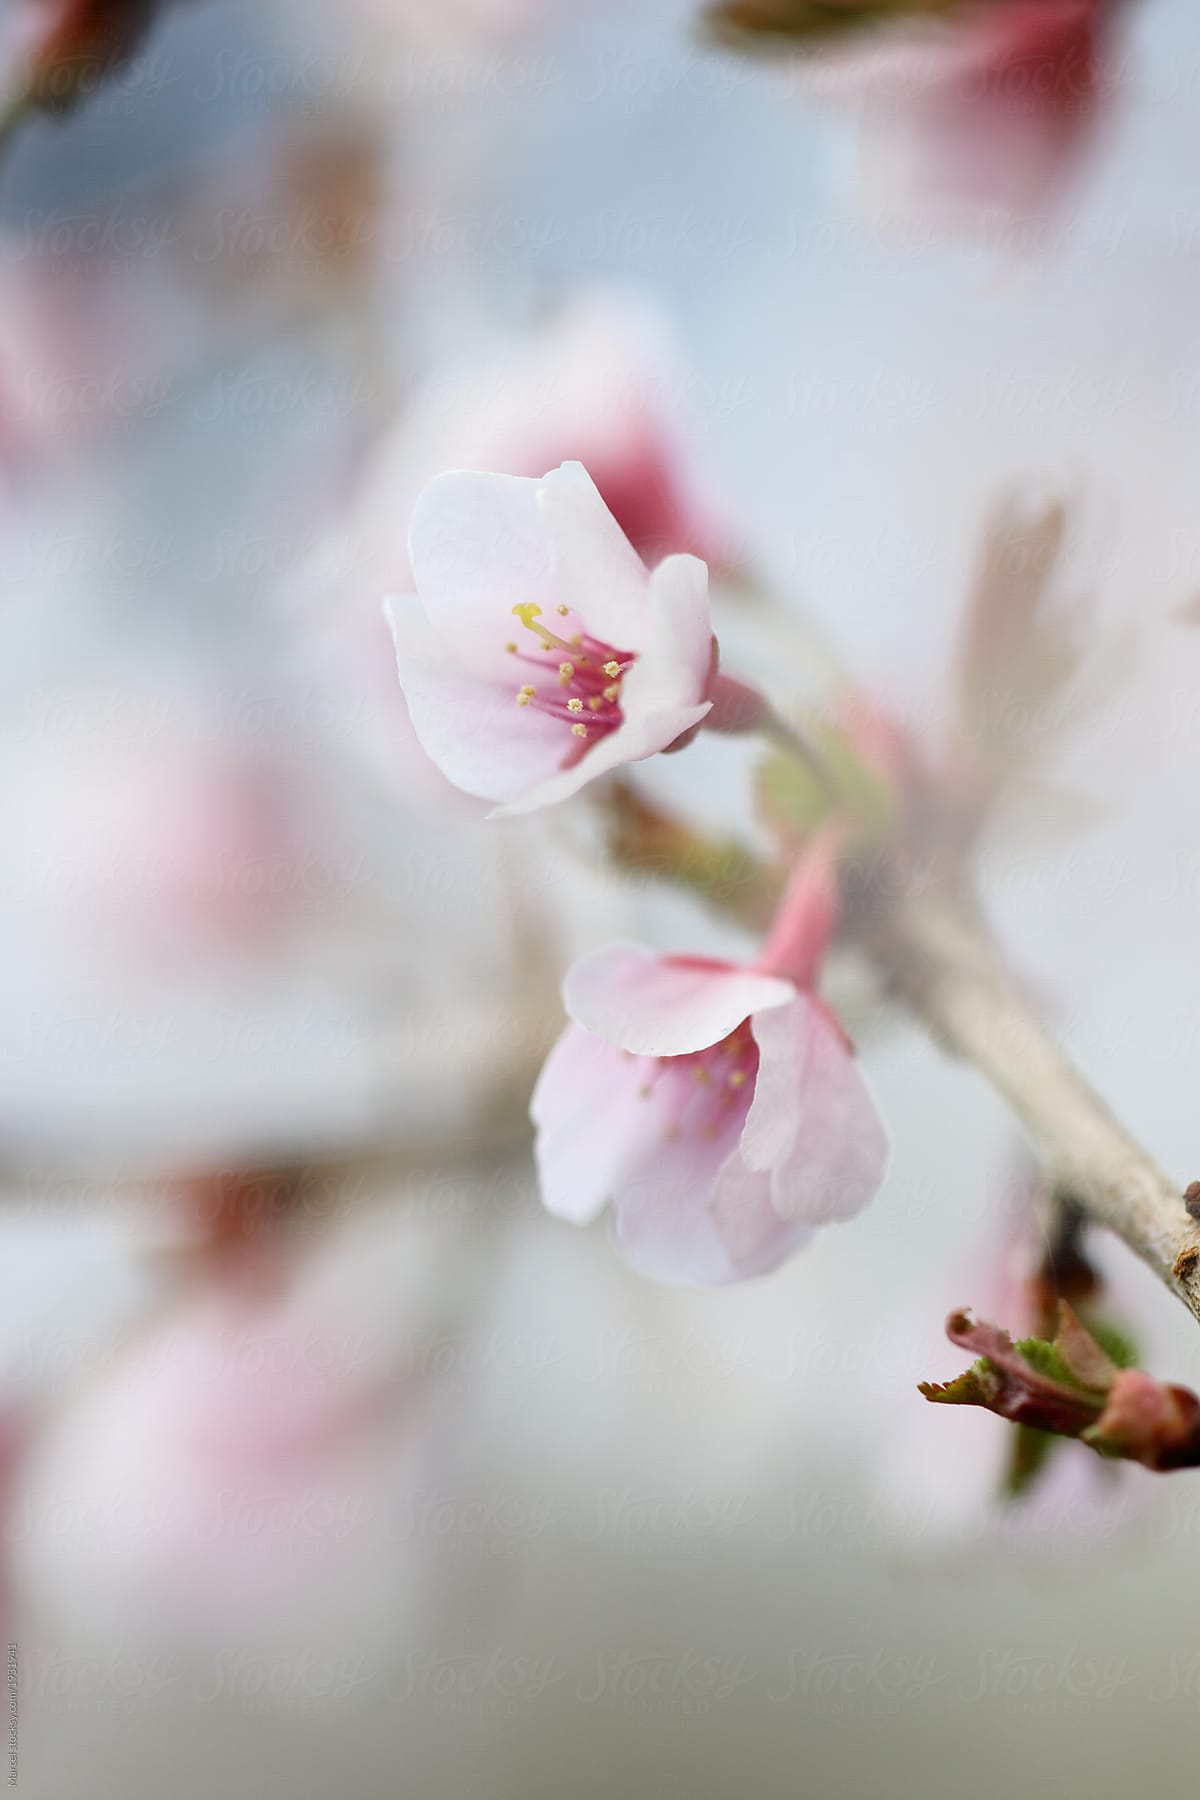 Cherry blossom details, shallow focus.